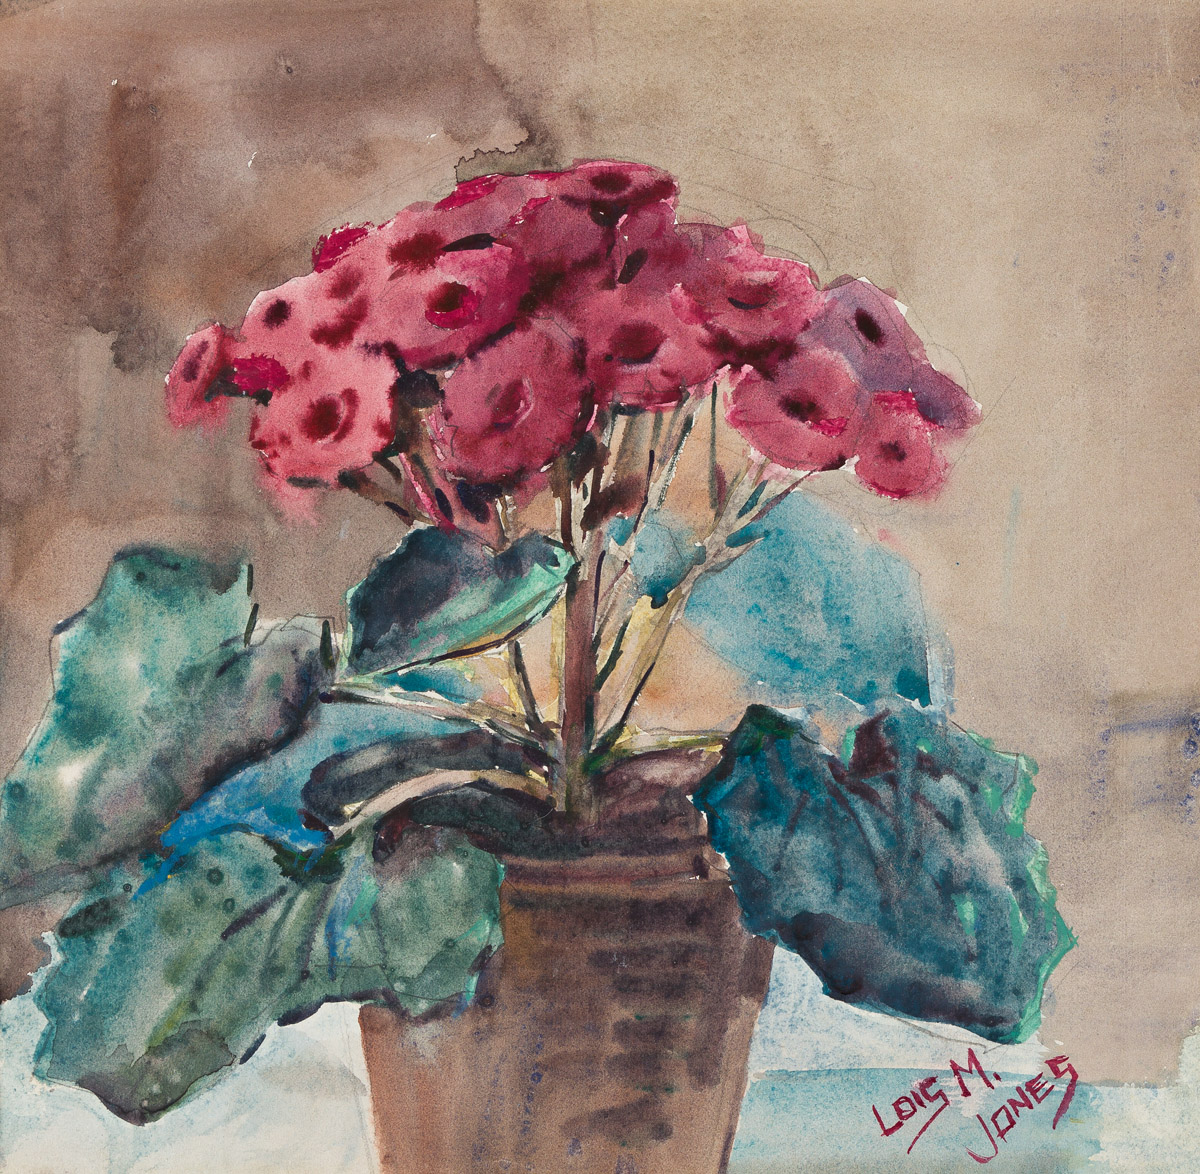 LOÏS MAILOU JONES (1905 - 1998) Untitled (Geraniums).